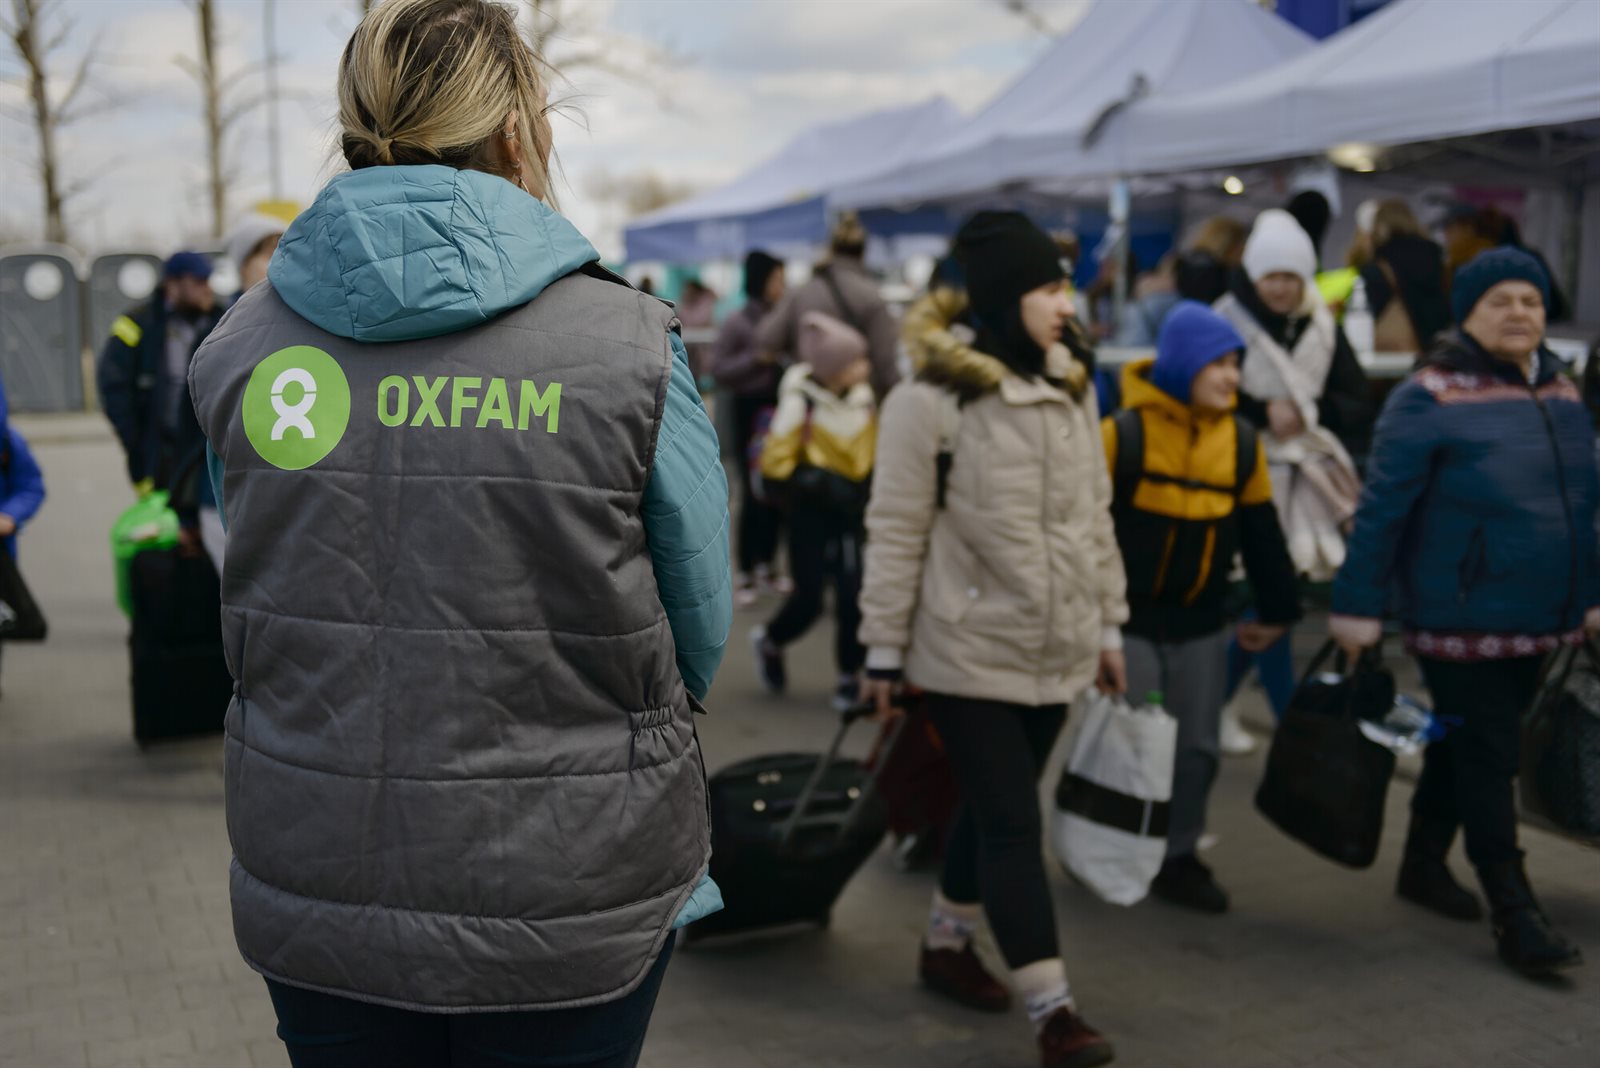 Oxfam Novib - aandacht voor integriteit